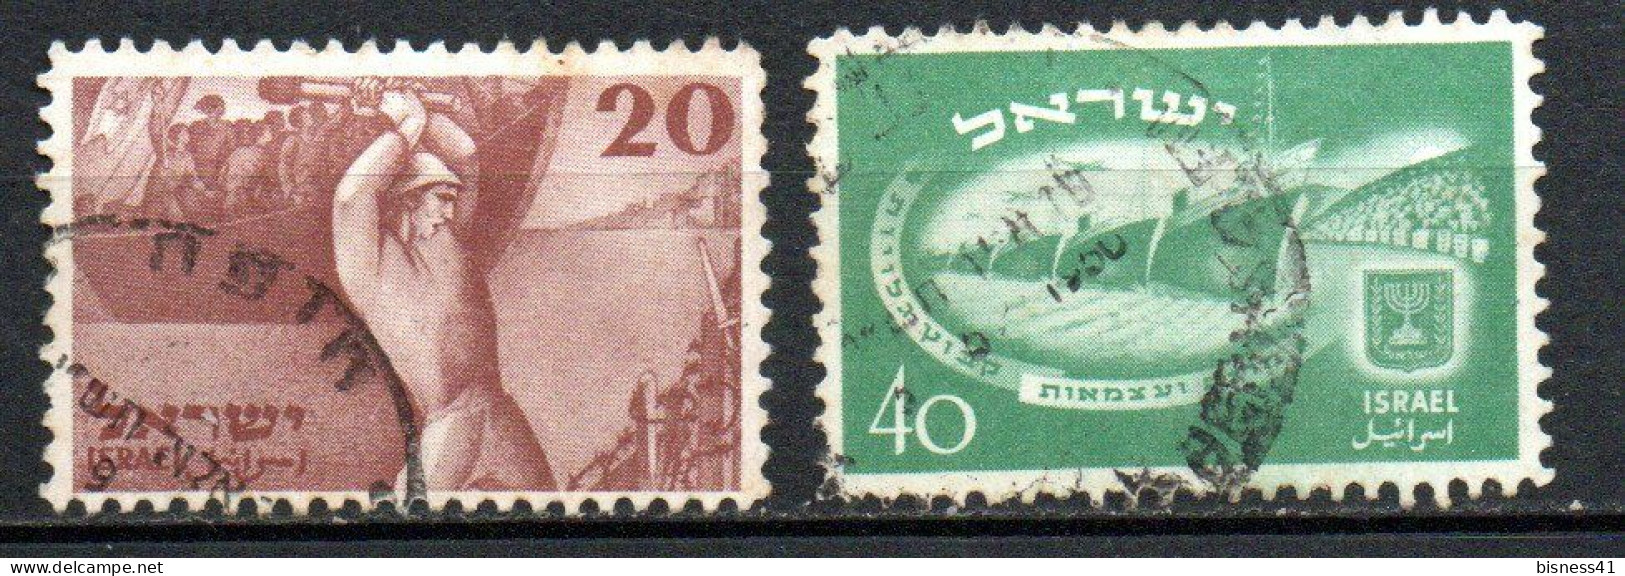 Col33 Israel  1950  N° 29 & 30  Oblitéré  Cote : 15,00€ - Usados (sin Tab)